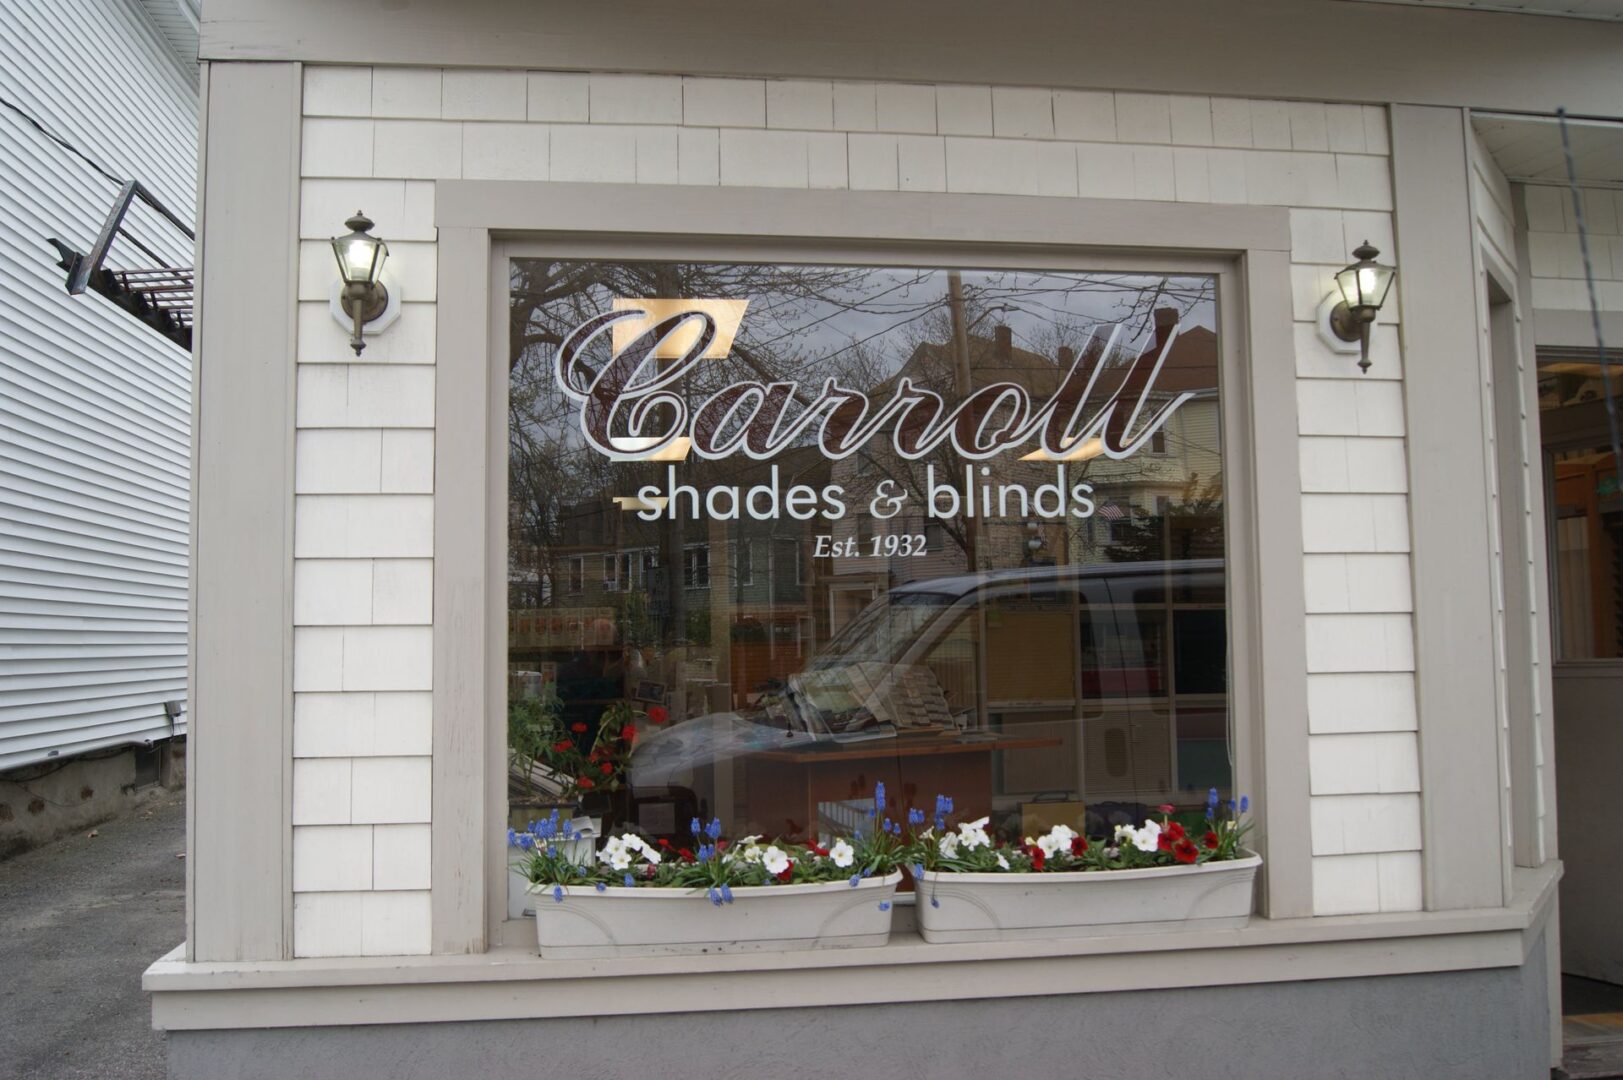 Caroll Shades and blinds